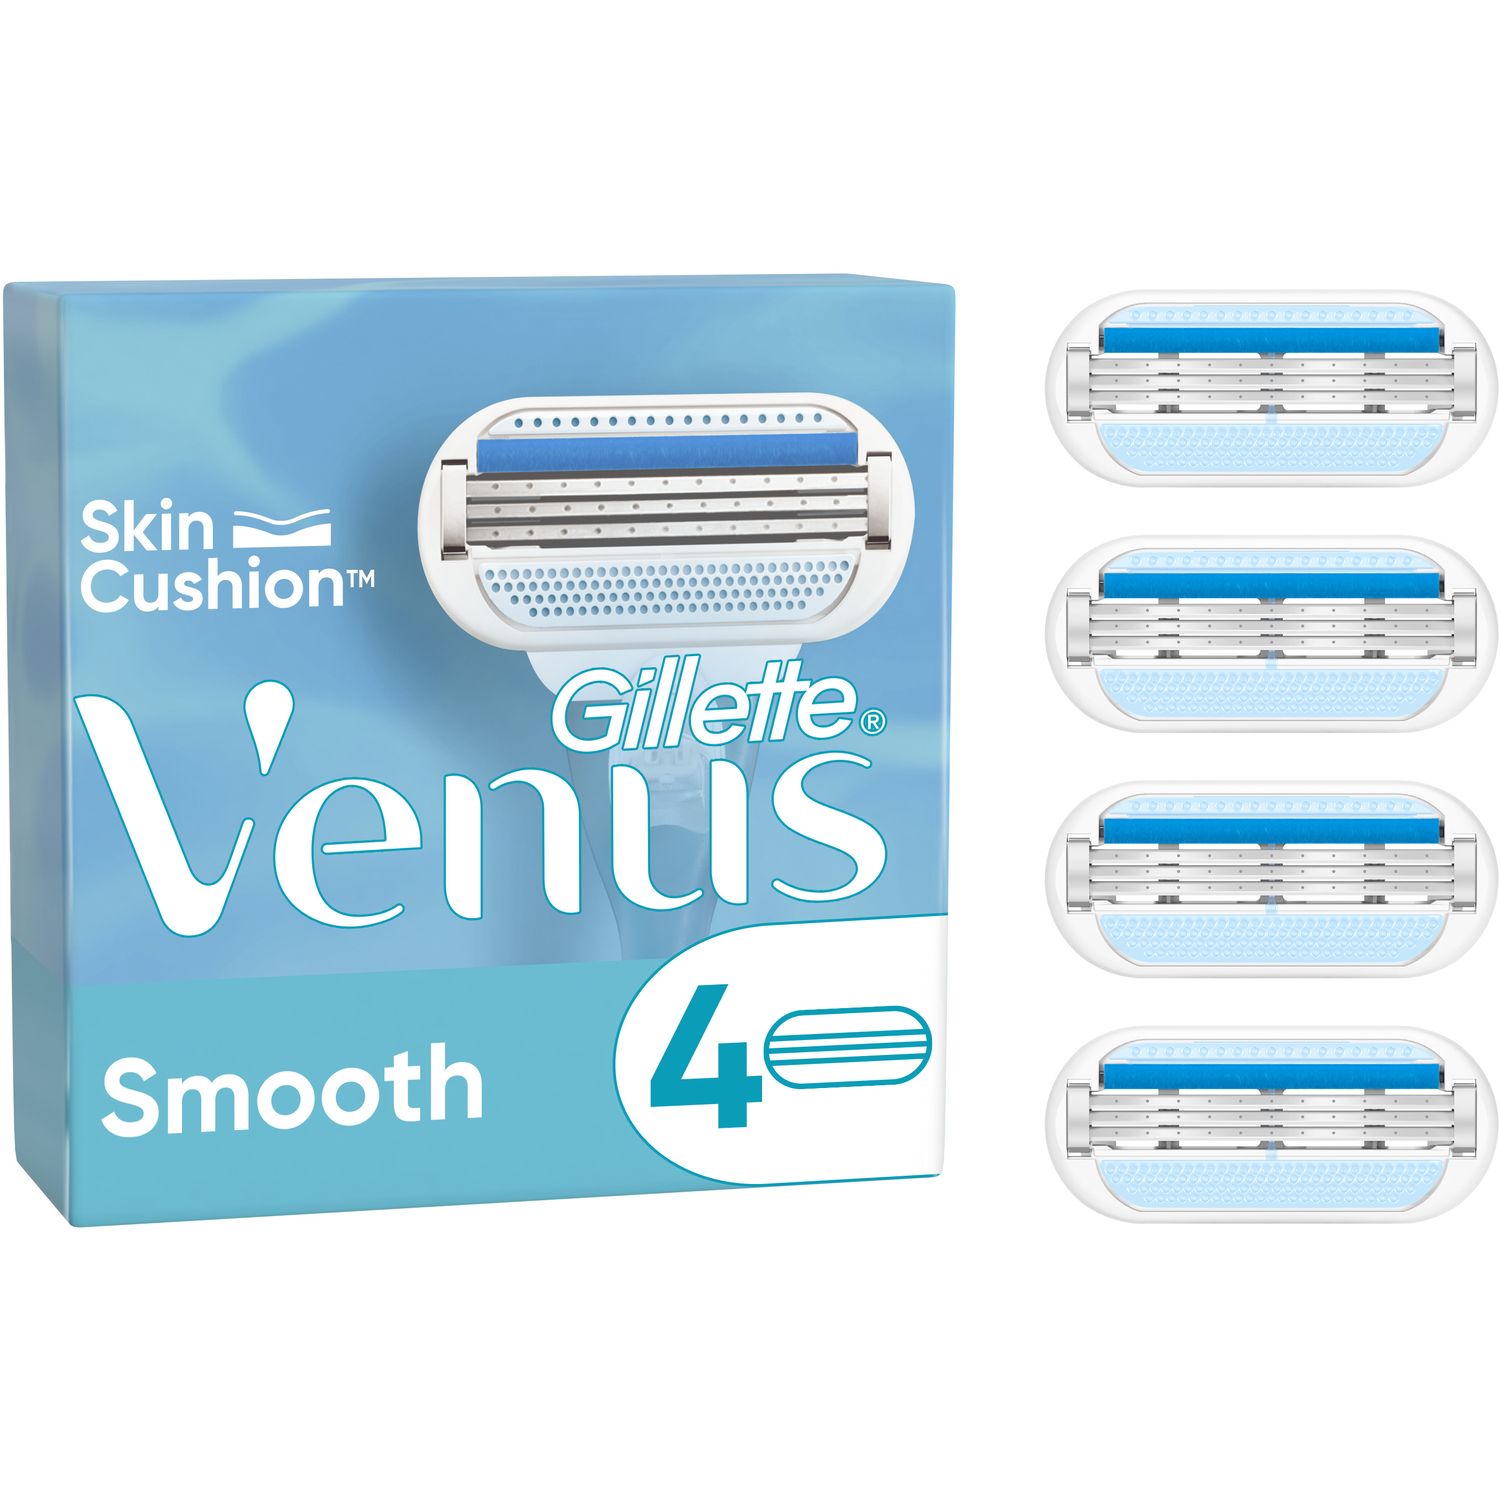 Cменные картриджи для бритья Gillette Venus Smooth, 4 шт. - фото 1